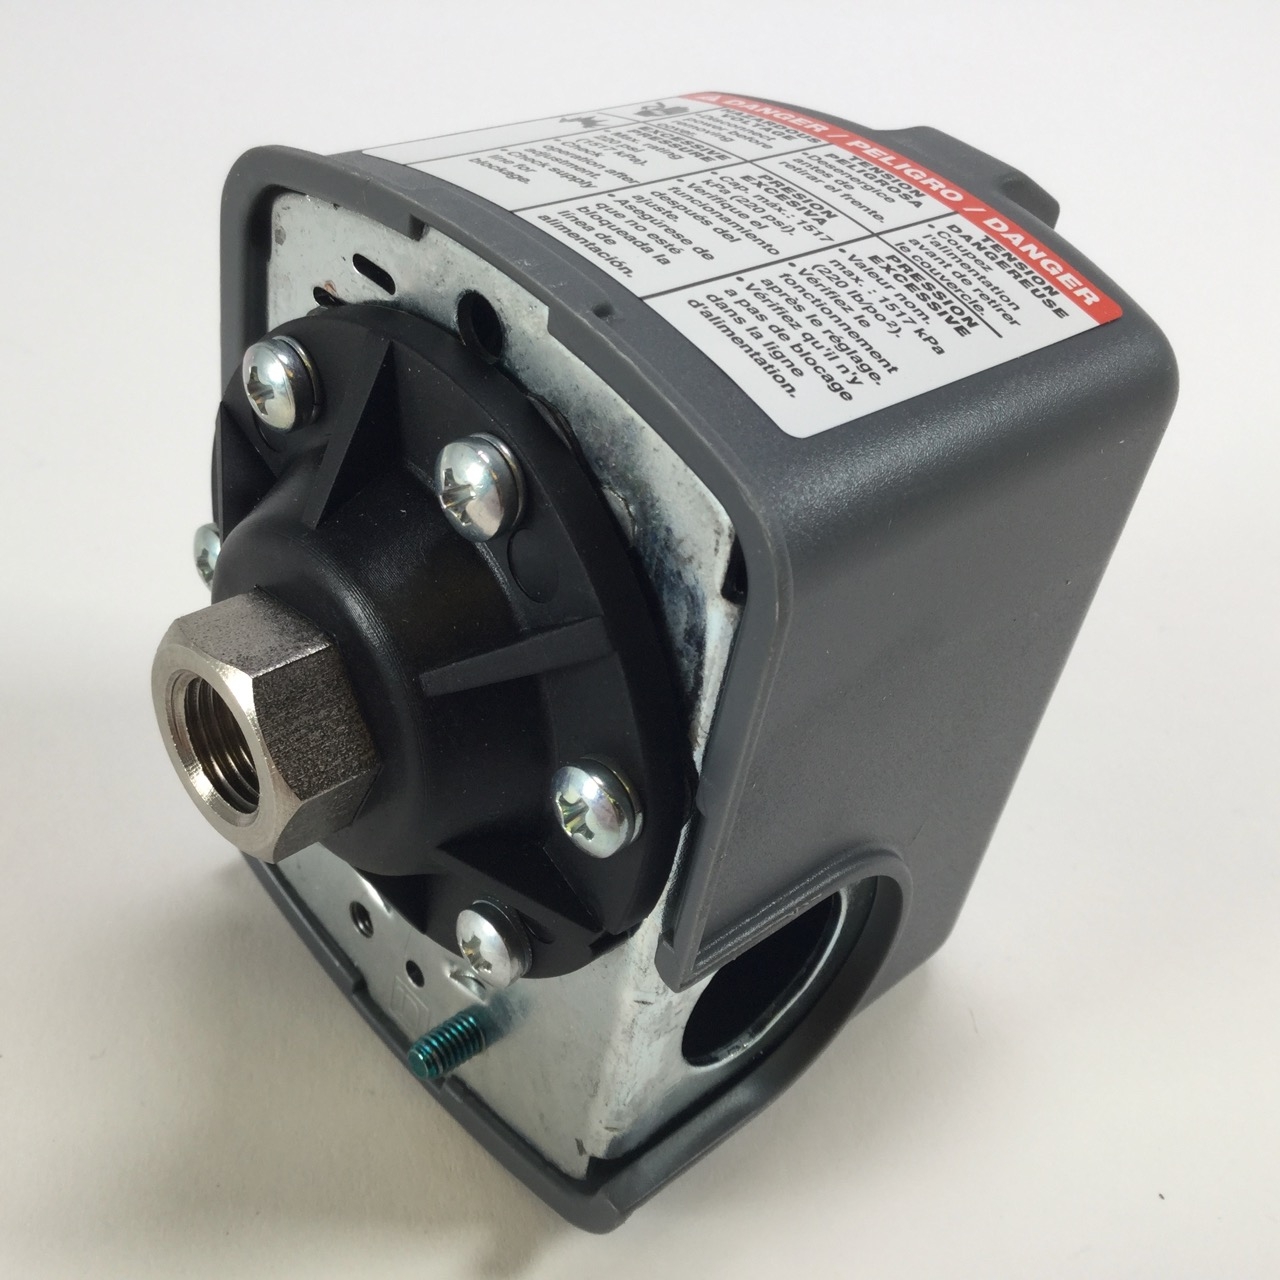 Schneider Electric 9013fsg2 Pressure Switch Manostat Druckwachter New Nfp